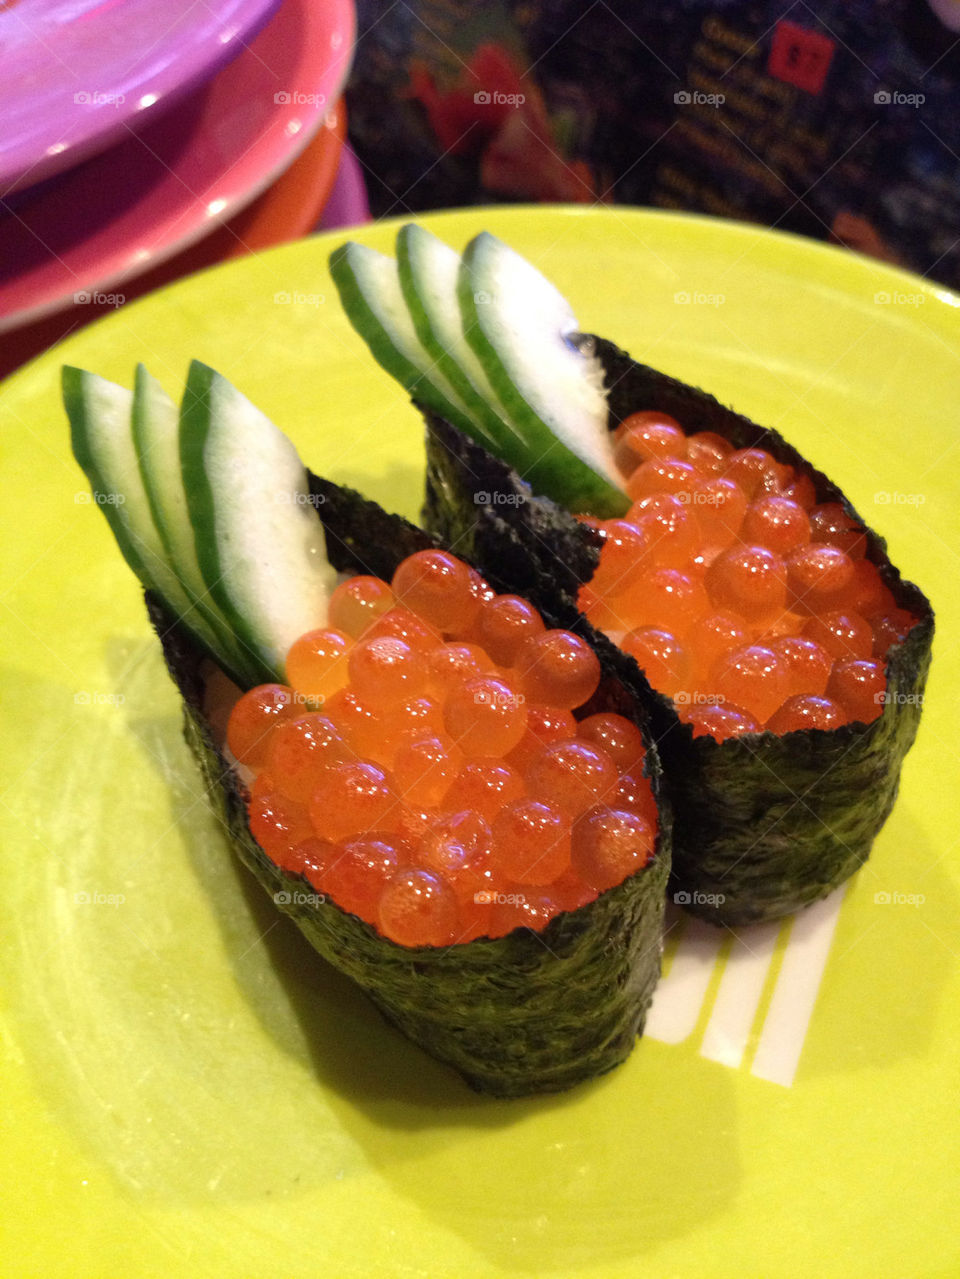 My favorite food.. Sushi 🍣